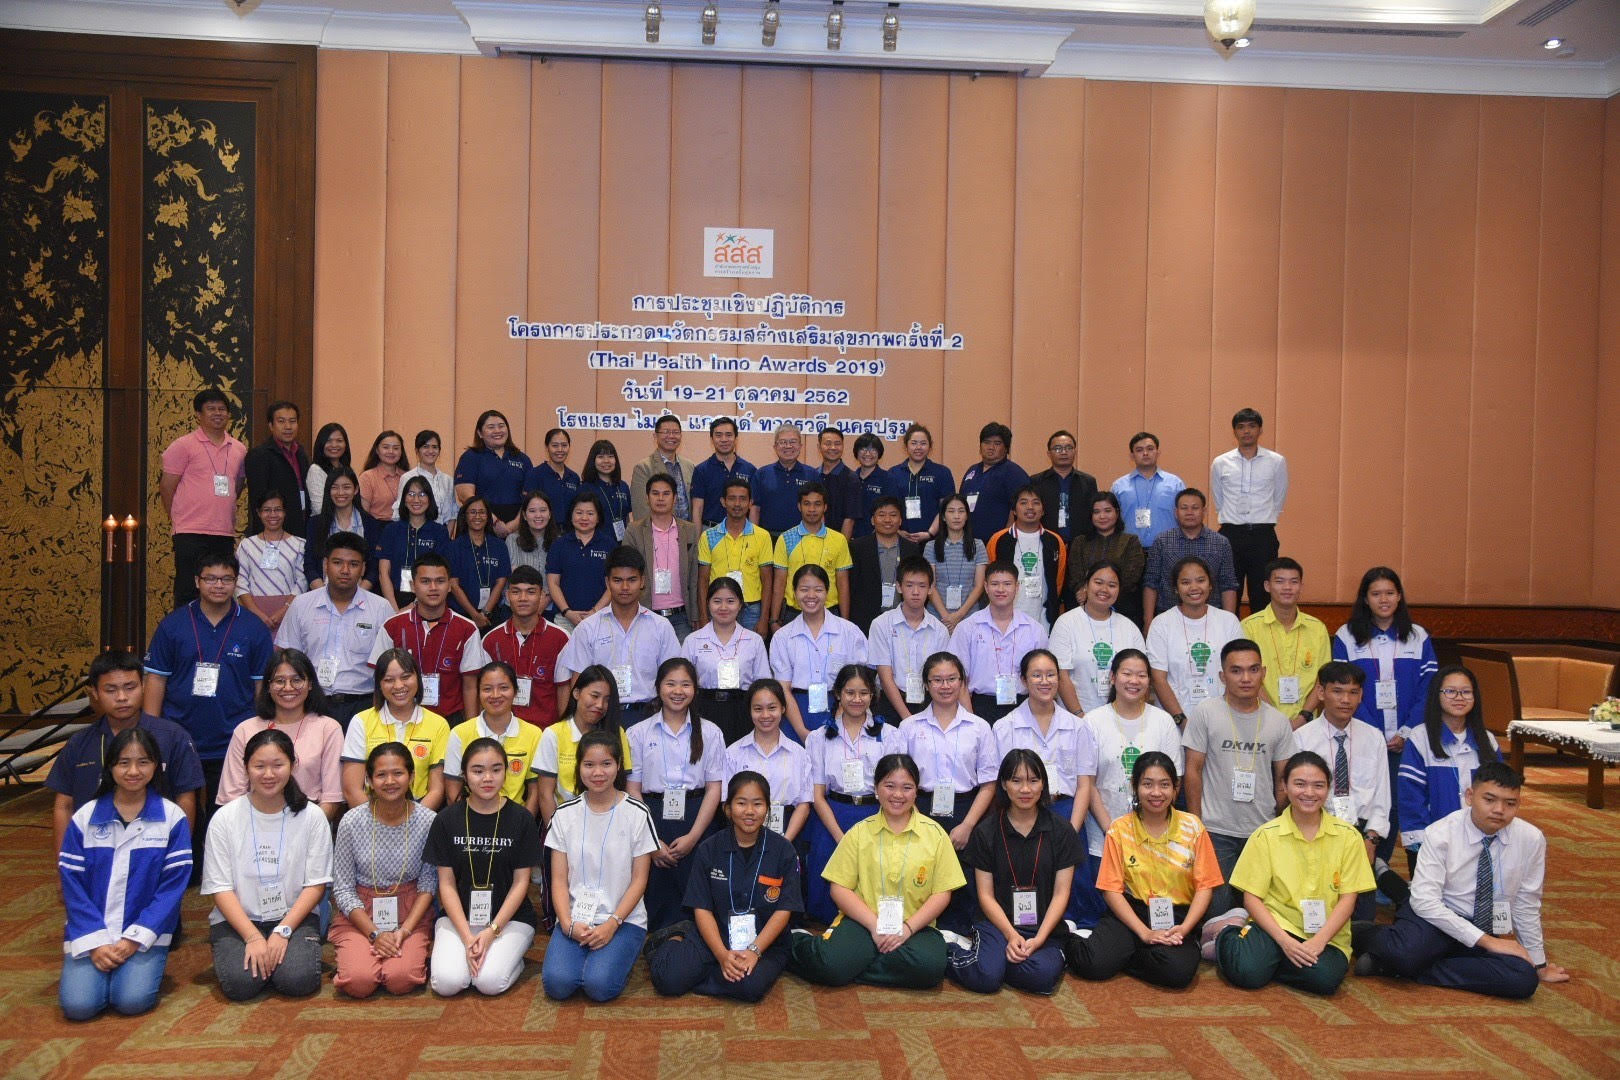 พิธีเปิดประชุมเชิงปฏิบัติการงานประกวดนวัตกรรมสร้างเสริมสุขภาพ ครั้งที่ 2  thaihealth